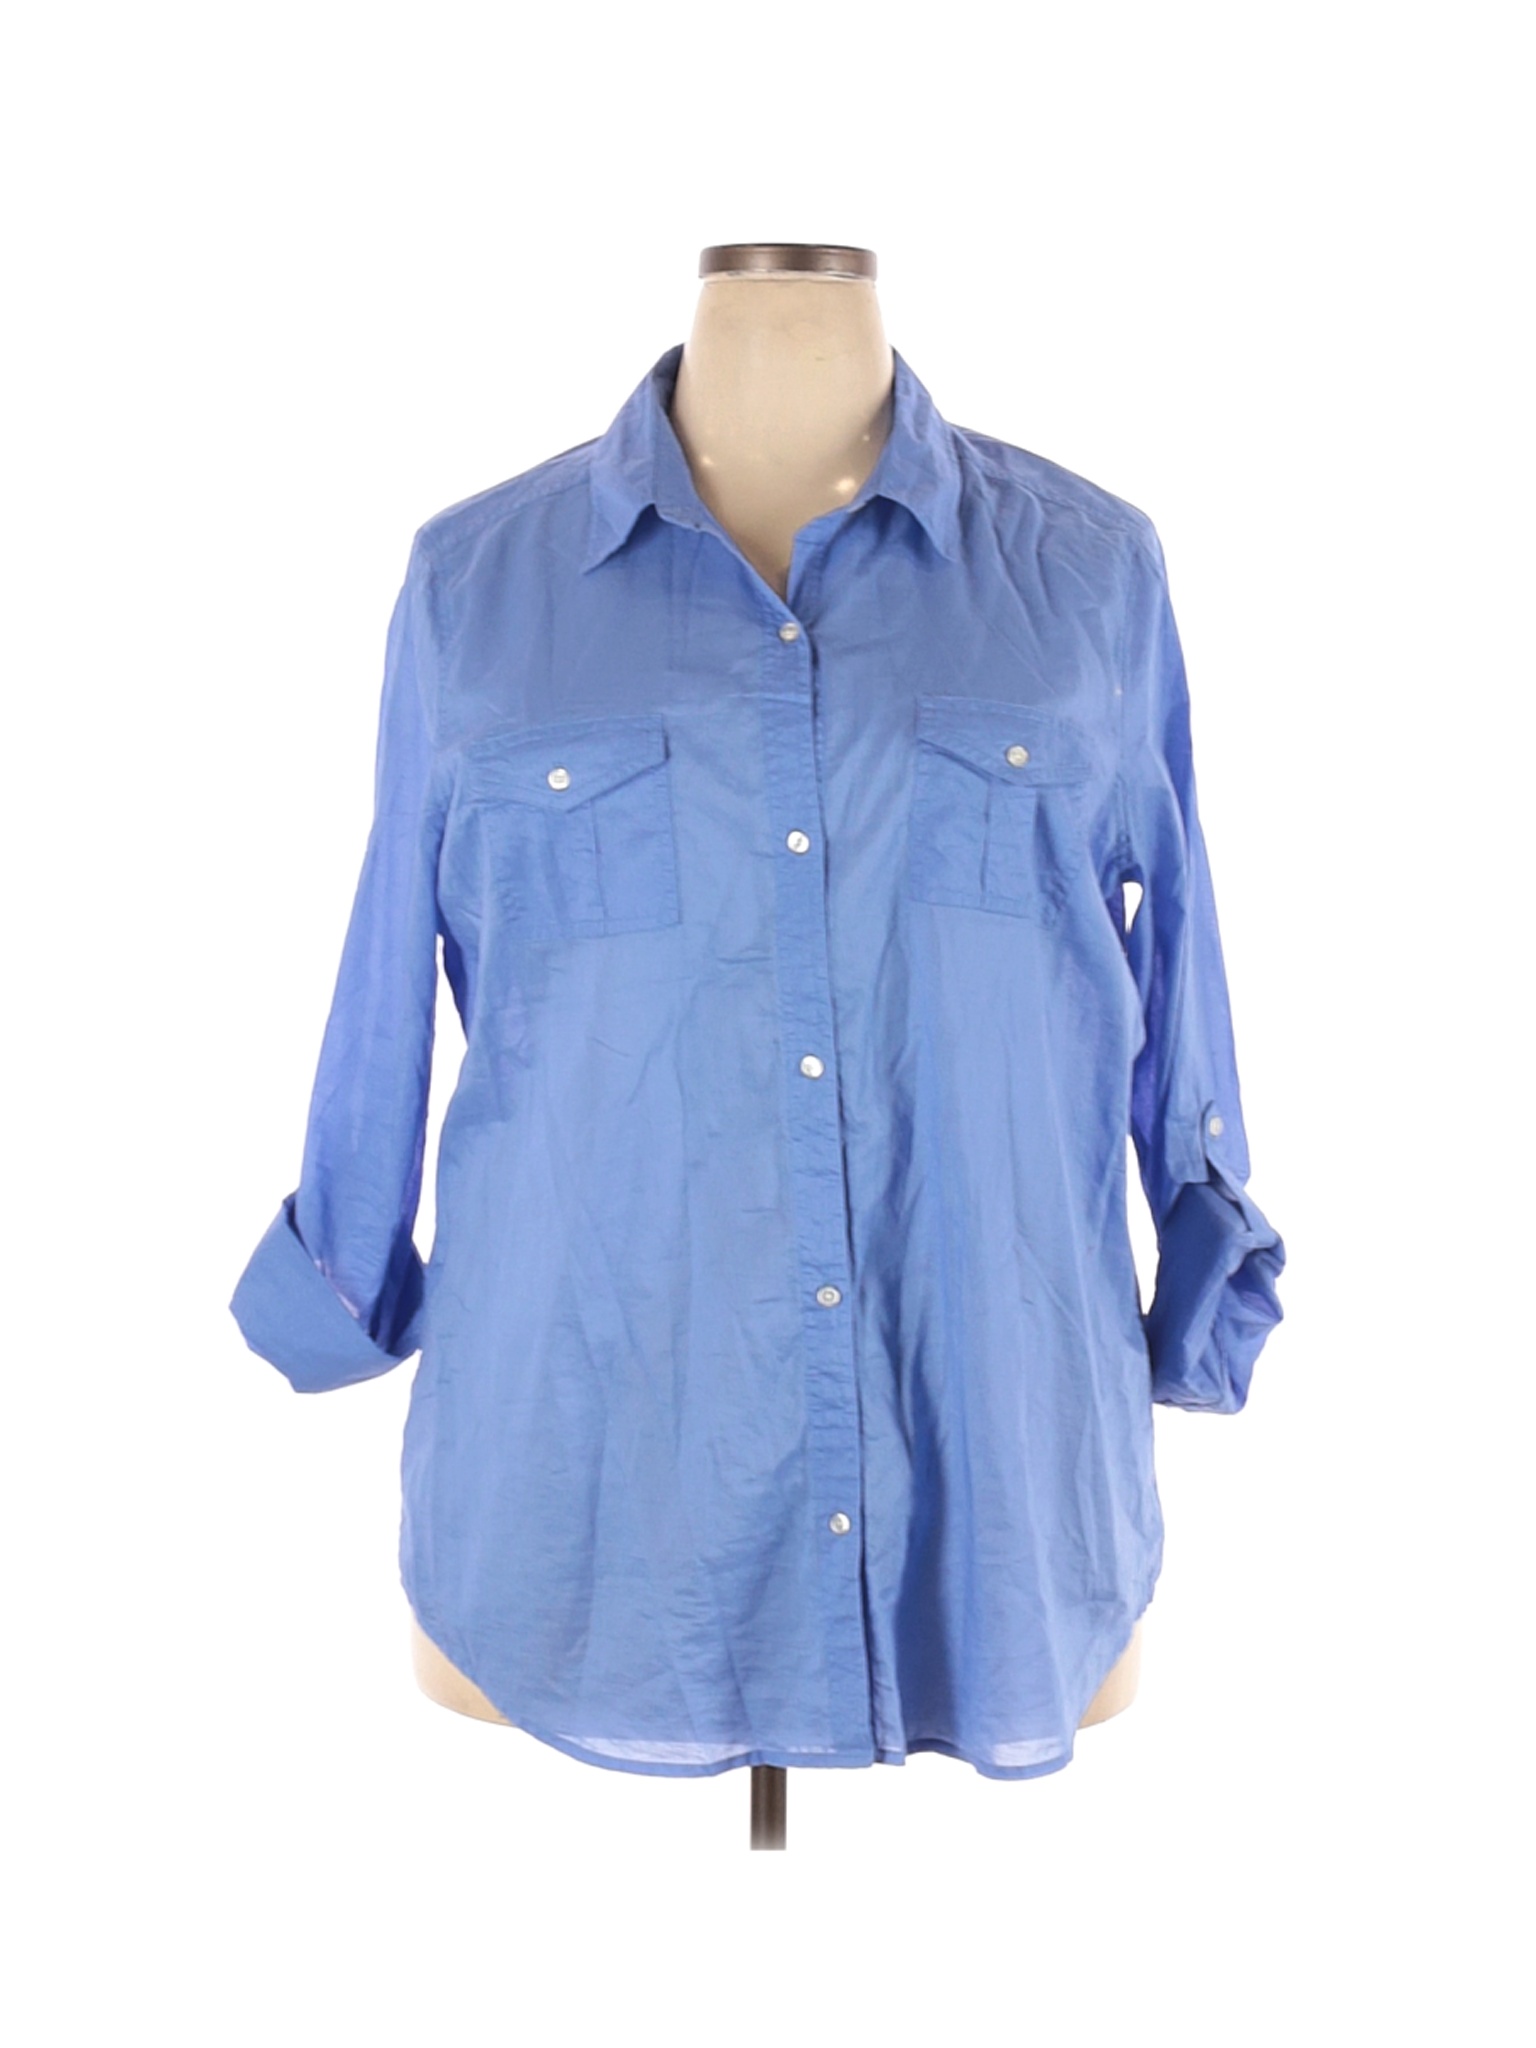 Old Navy Women Blue Long Sleeve Button-Down Shirt XXL | eBay